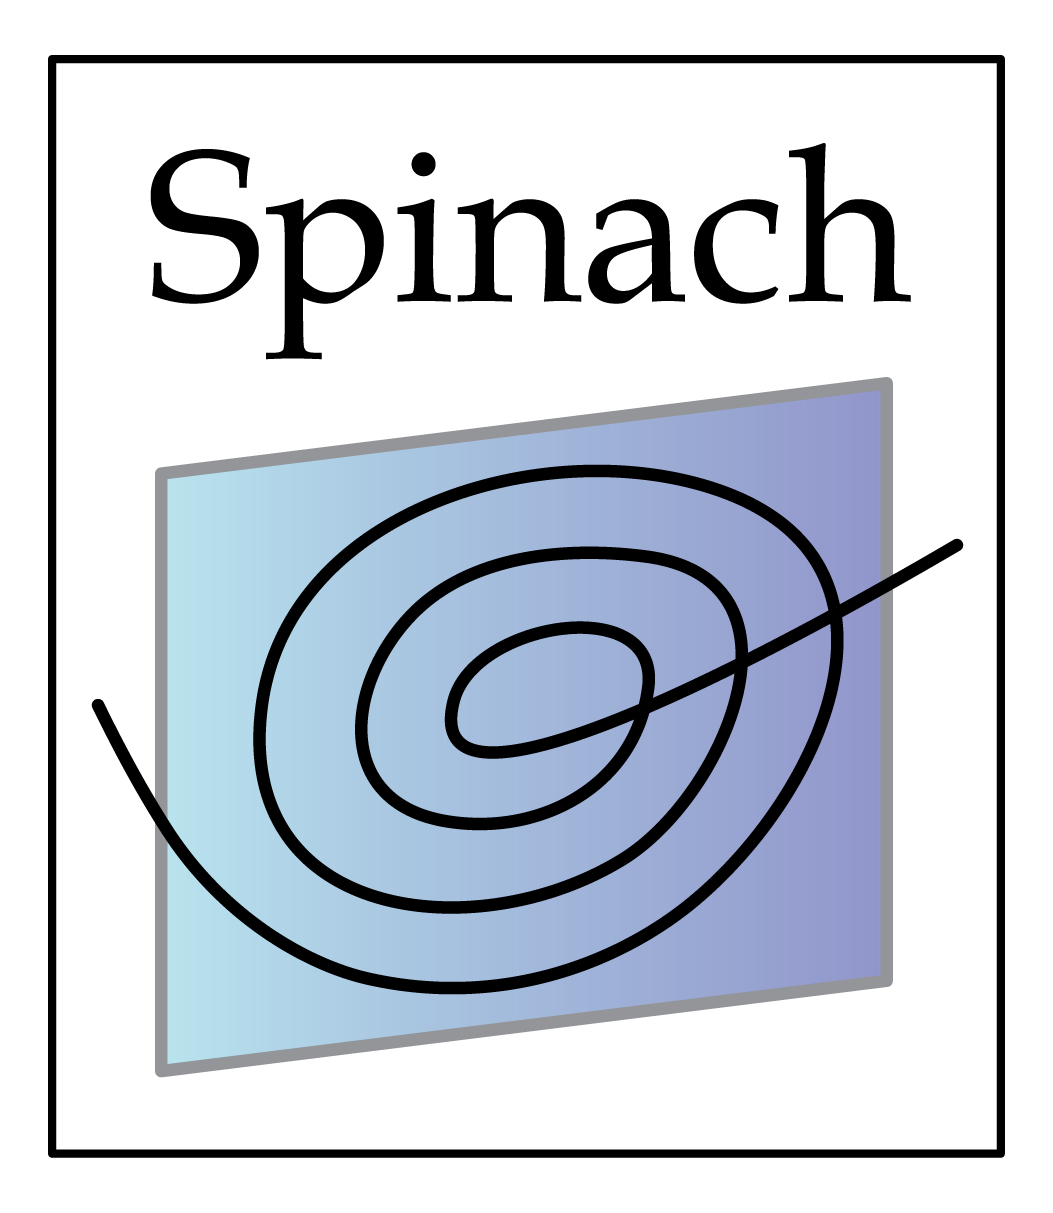 Spinach logo